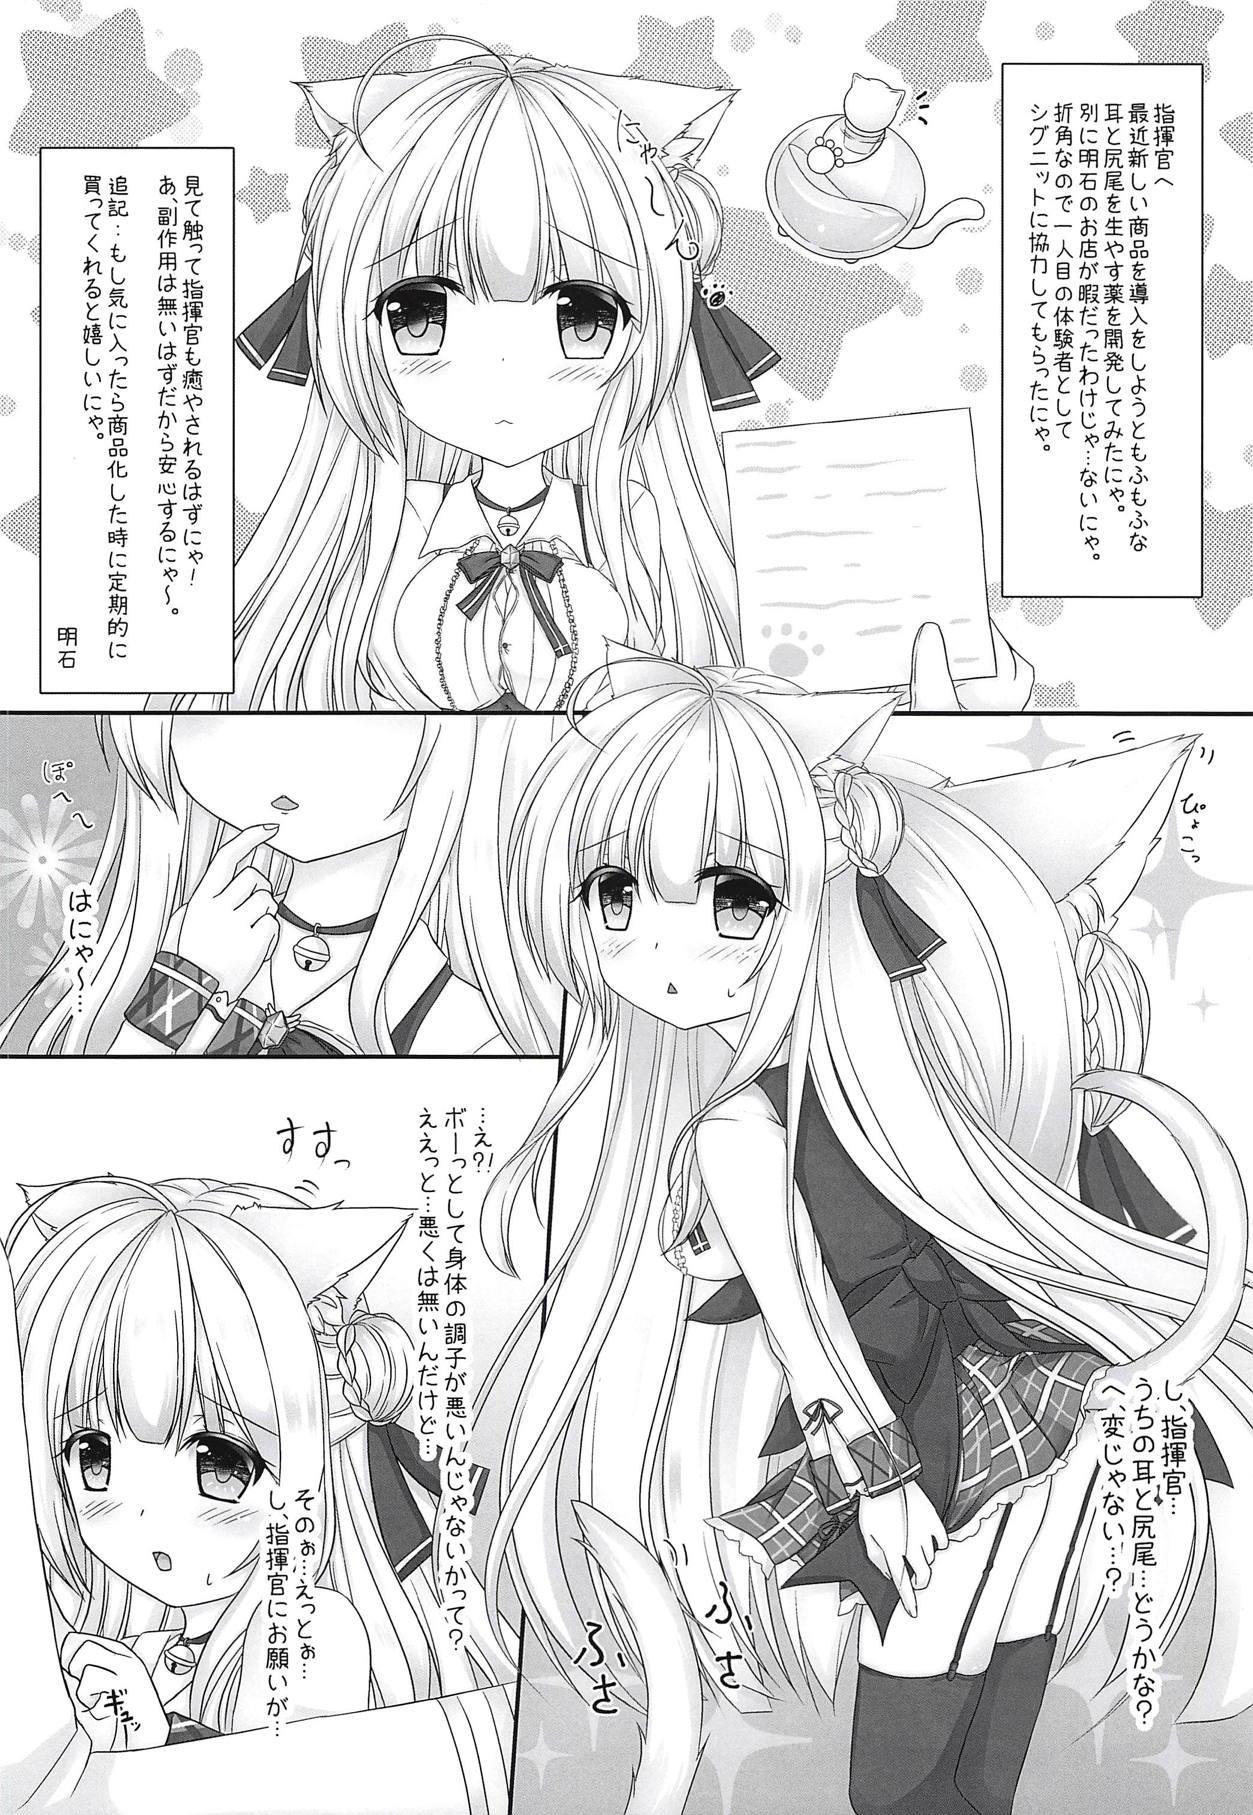 Tight Honjitsu wa Nyanko Biyori desu - Azur lane Sologirl - Page 3